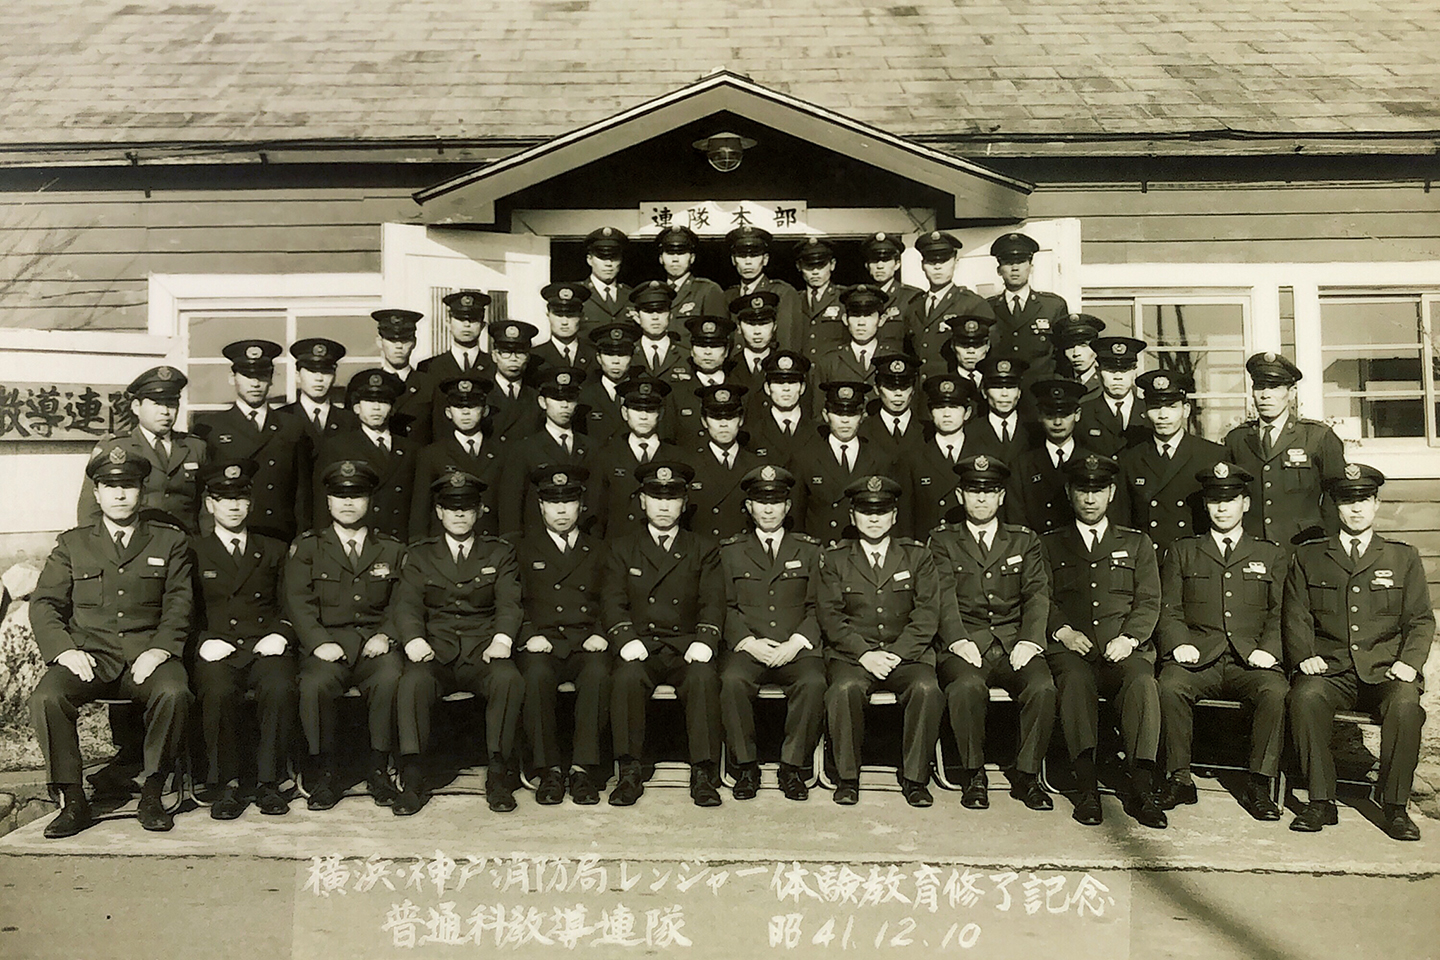 昭和41年12月10日、陸自富士学校の普通科教導連隊において、神戸市消防局は横浜市消防局とともに、レンジャー体験教育を無事に修了した。